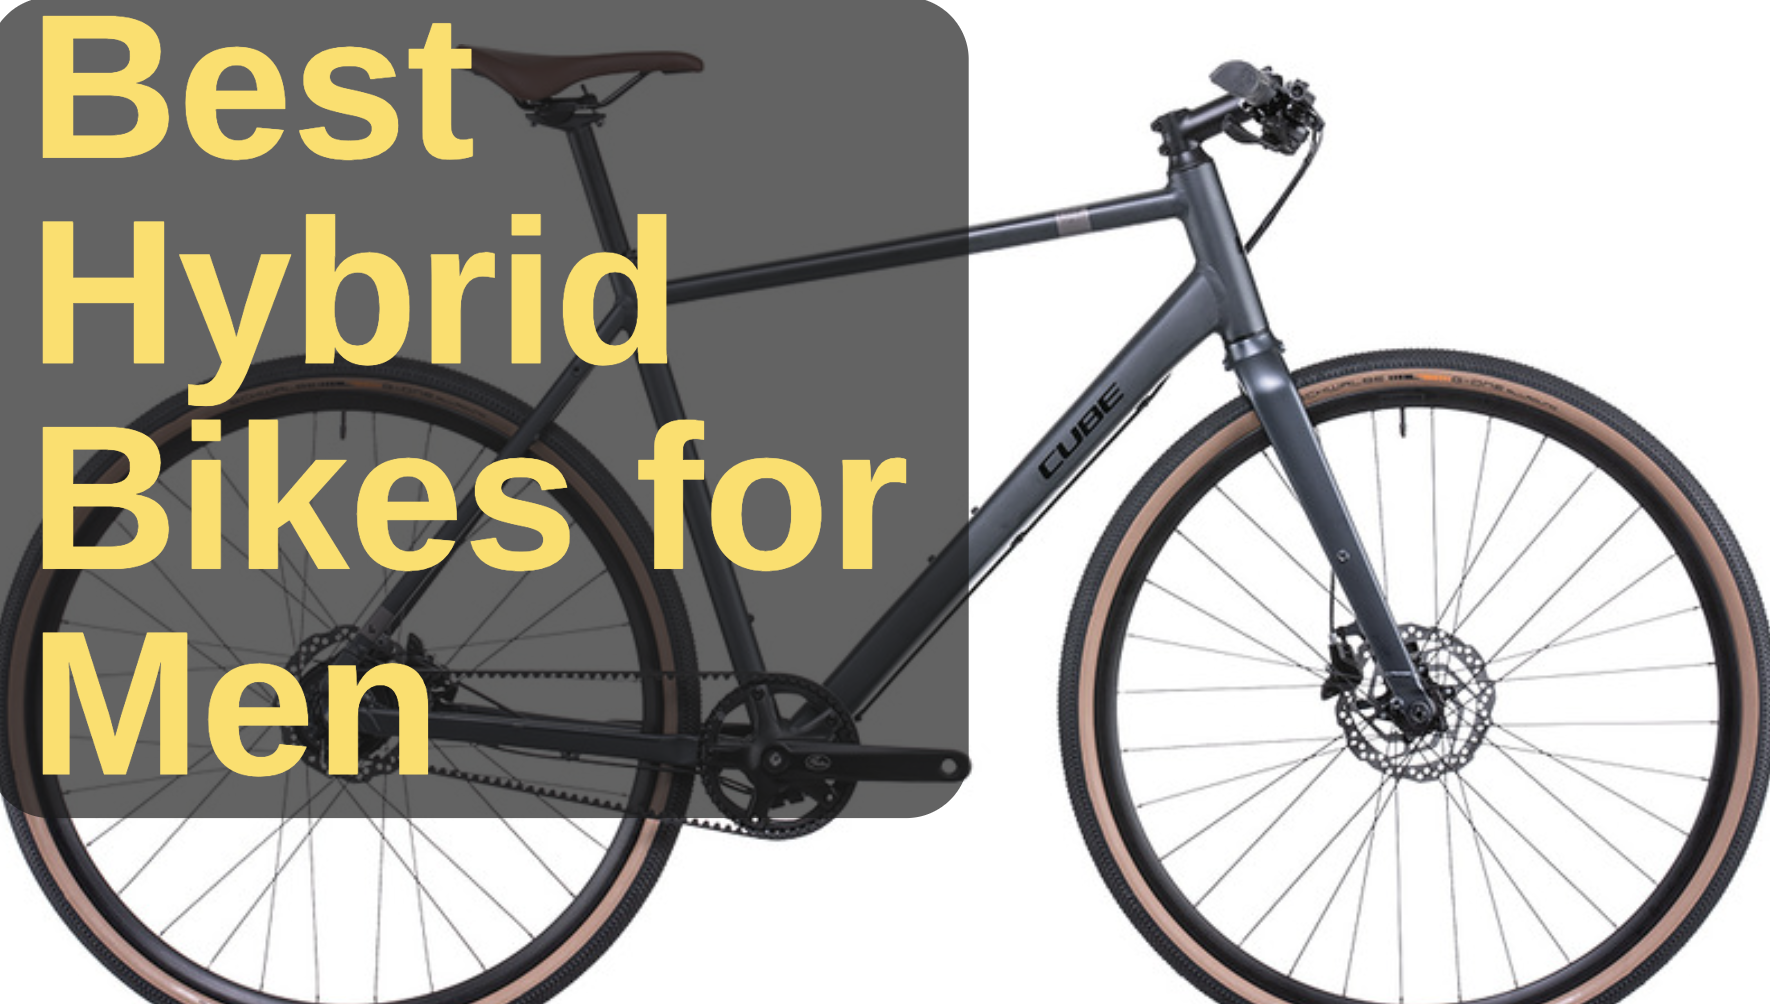 Best Hybrid Bikes for Men